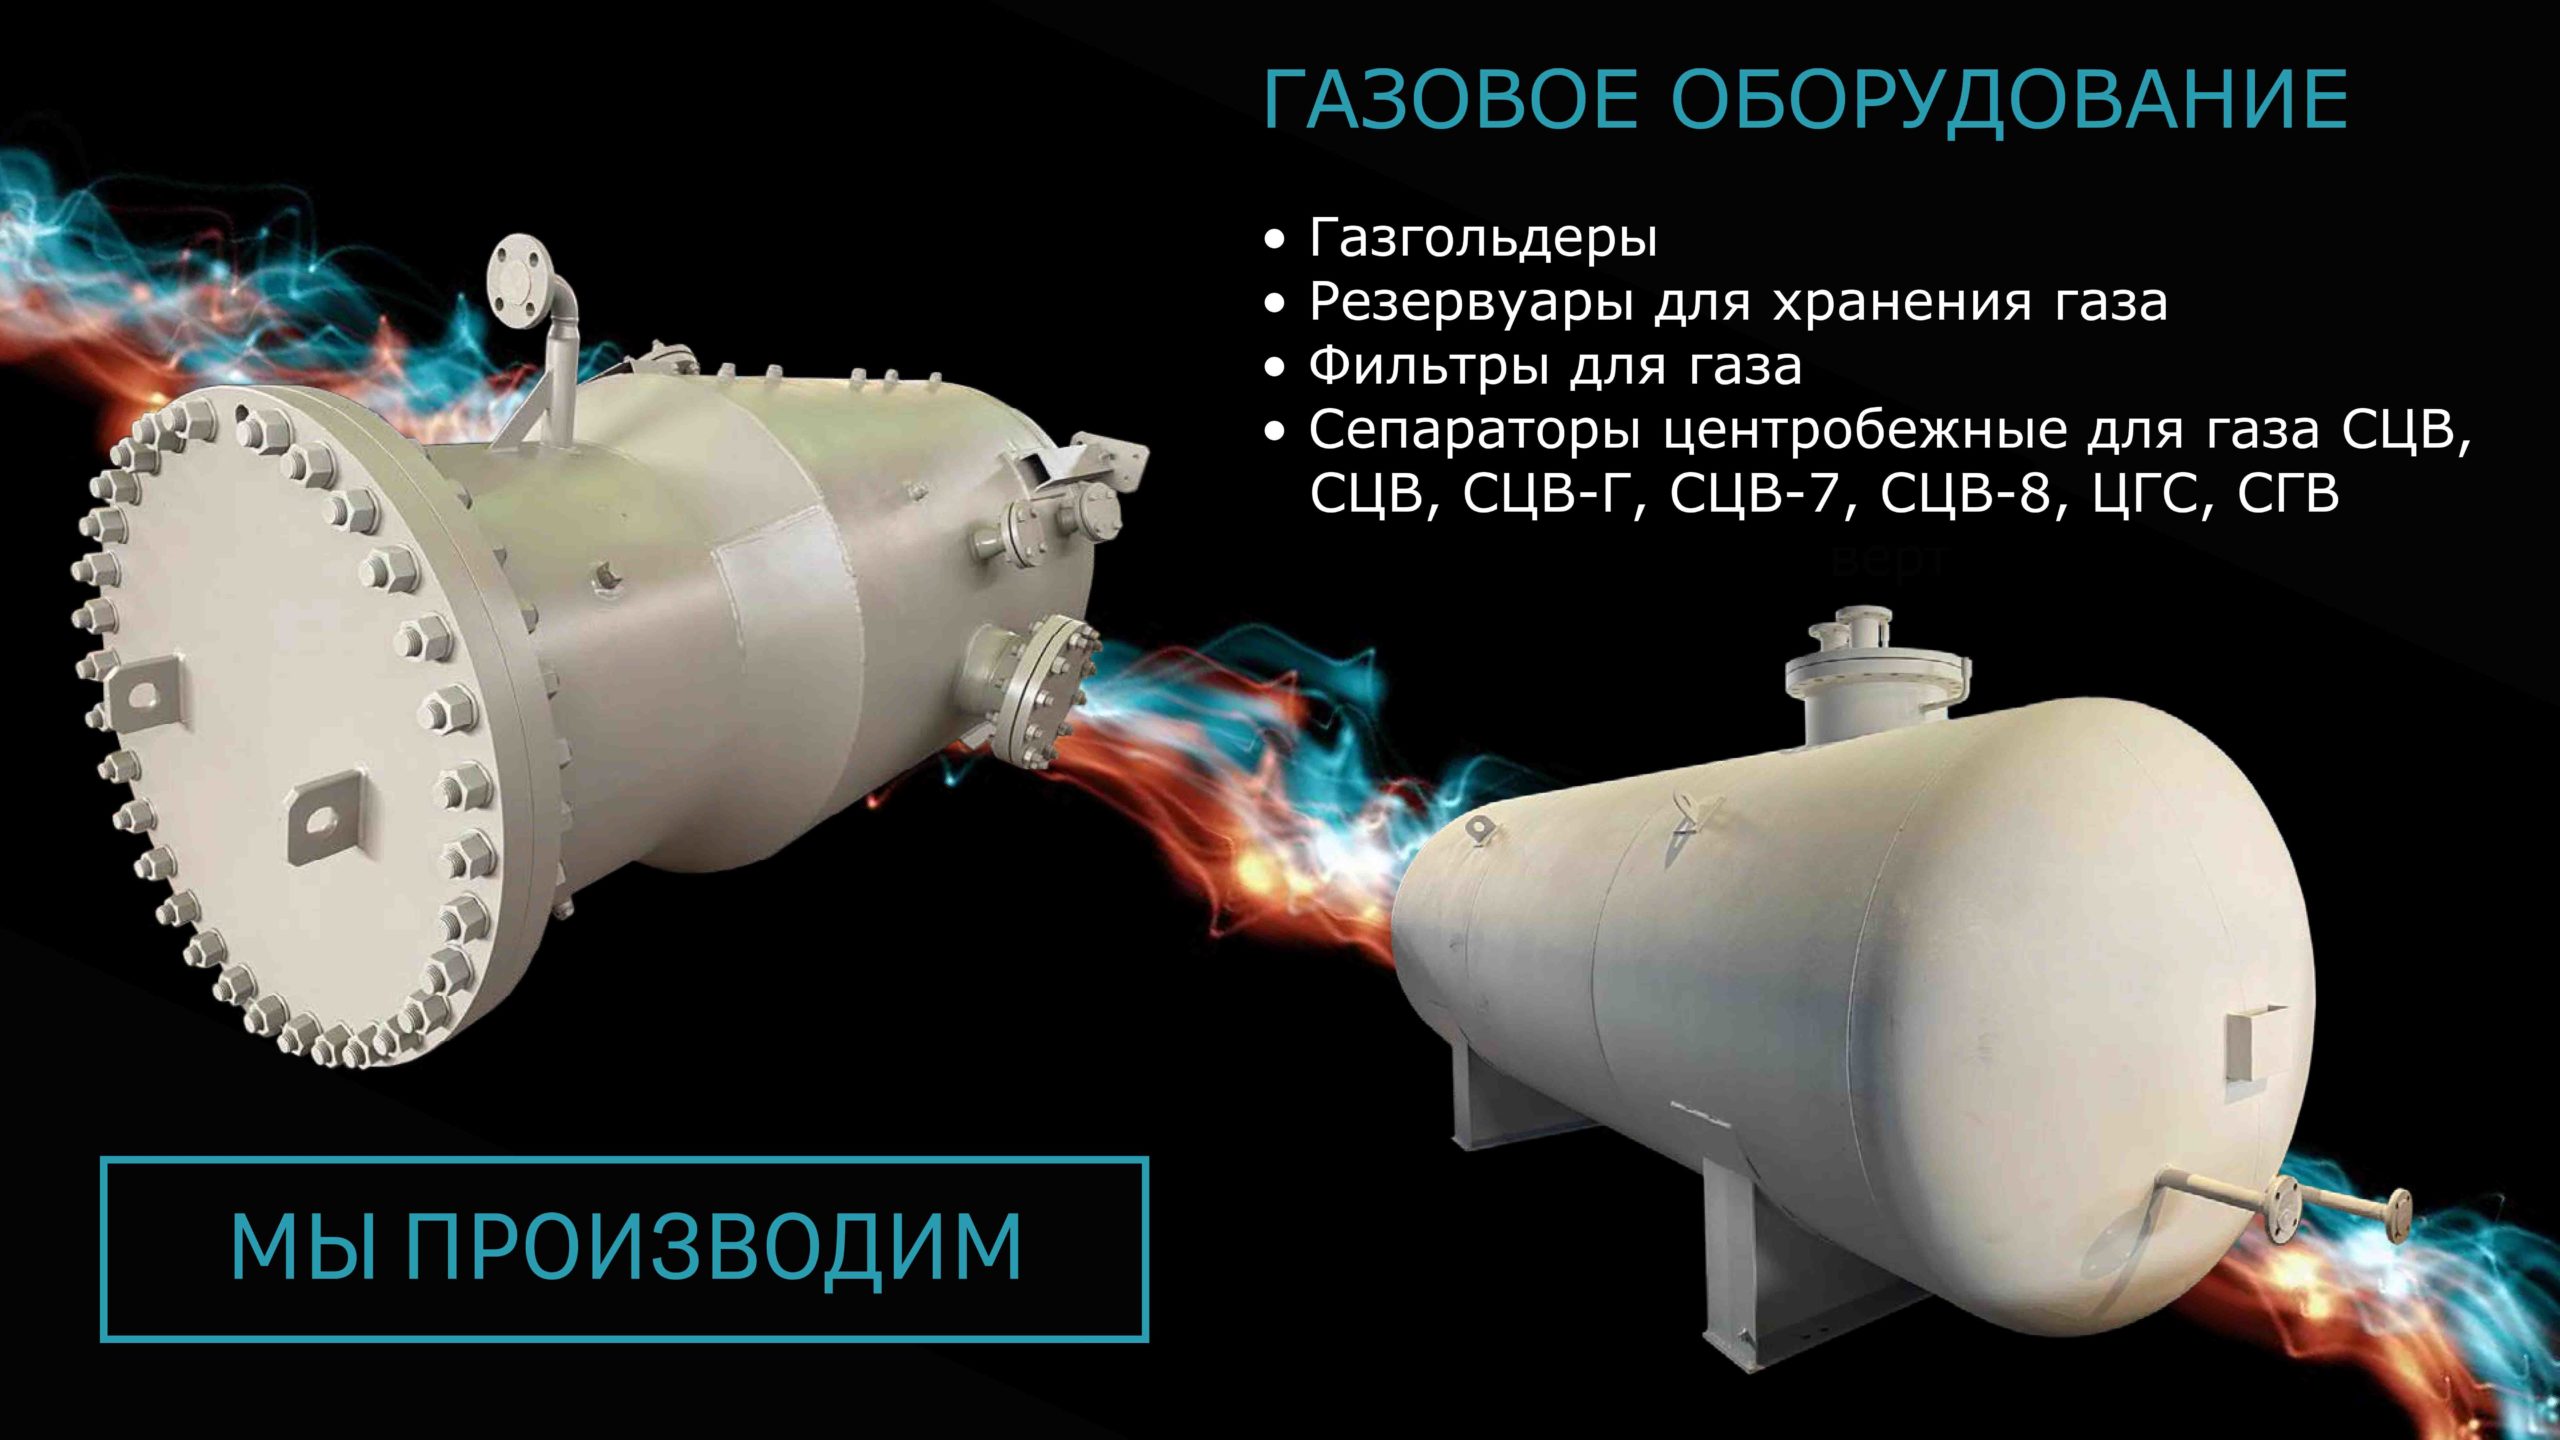 СТИЛСГРУПП - газовое оборудование